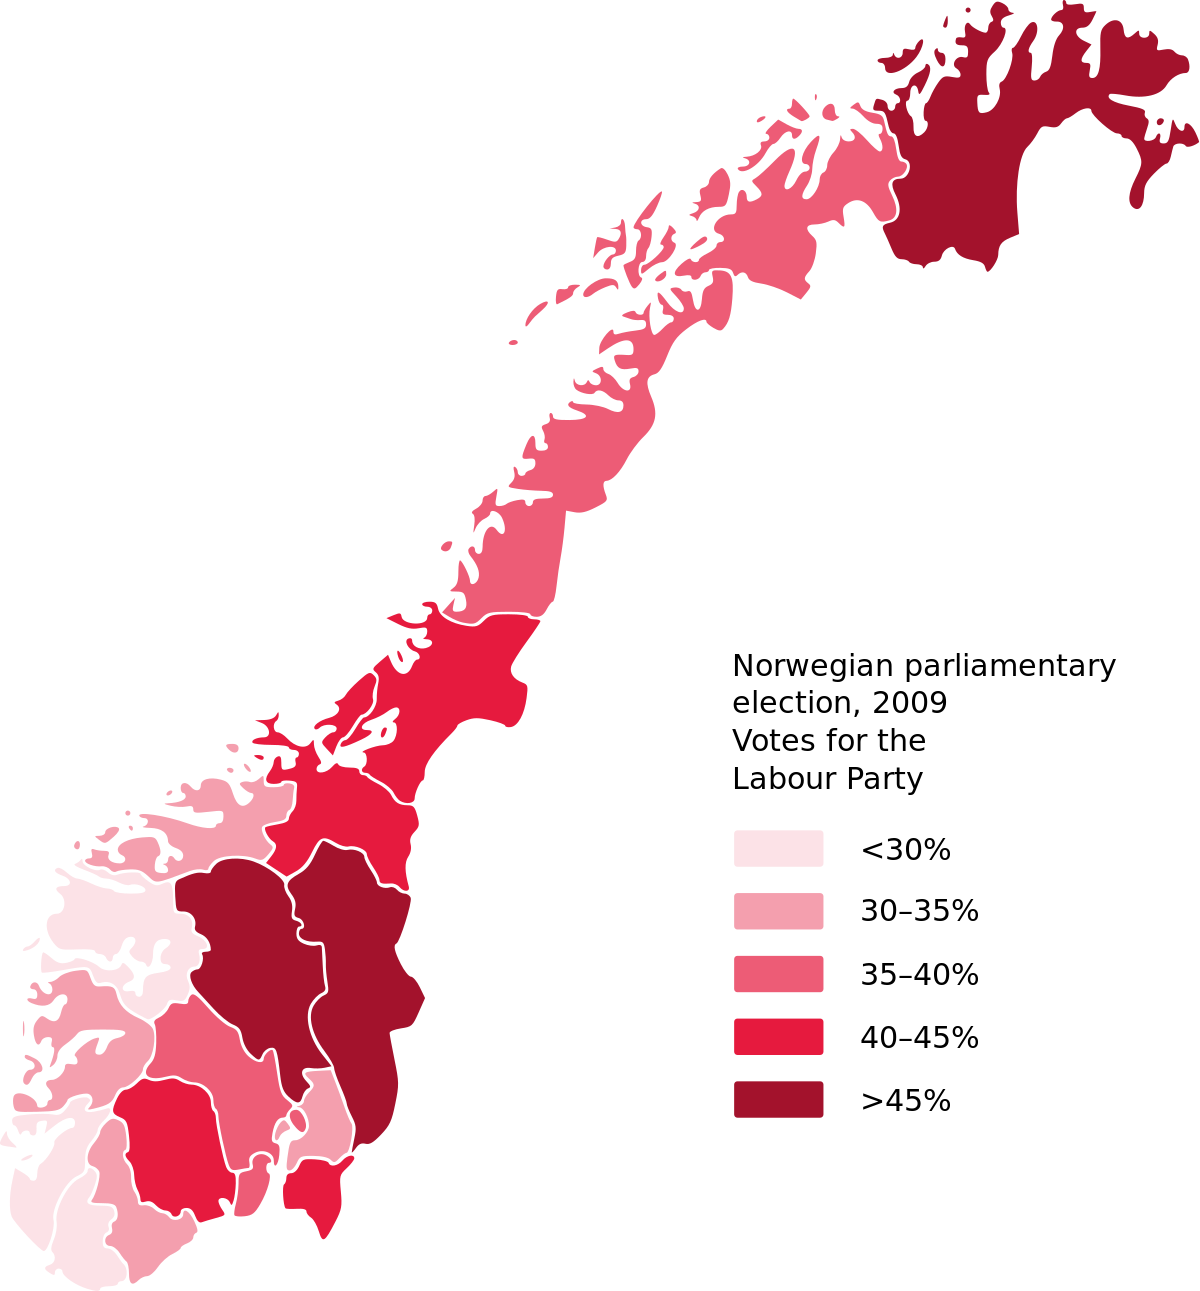 Карты 2009 года. Регионы Норвегии. Территория Норвегии в 2009 году. Выборы в Норвегии. Карта 2009 года.